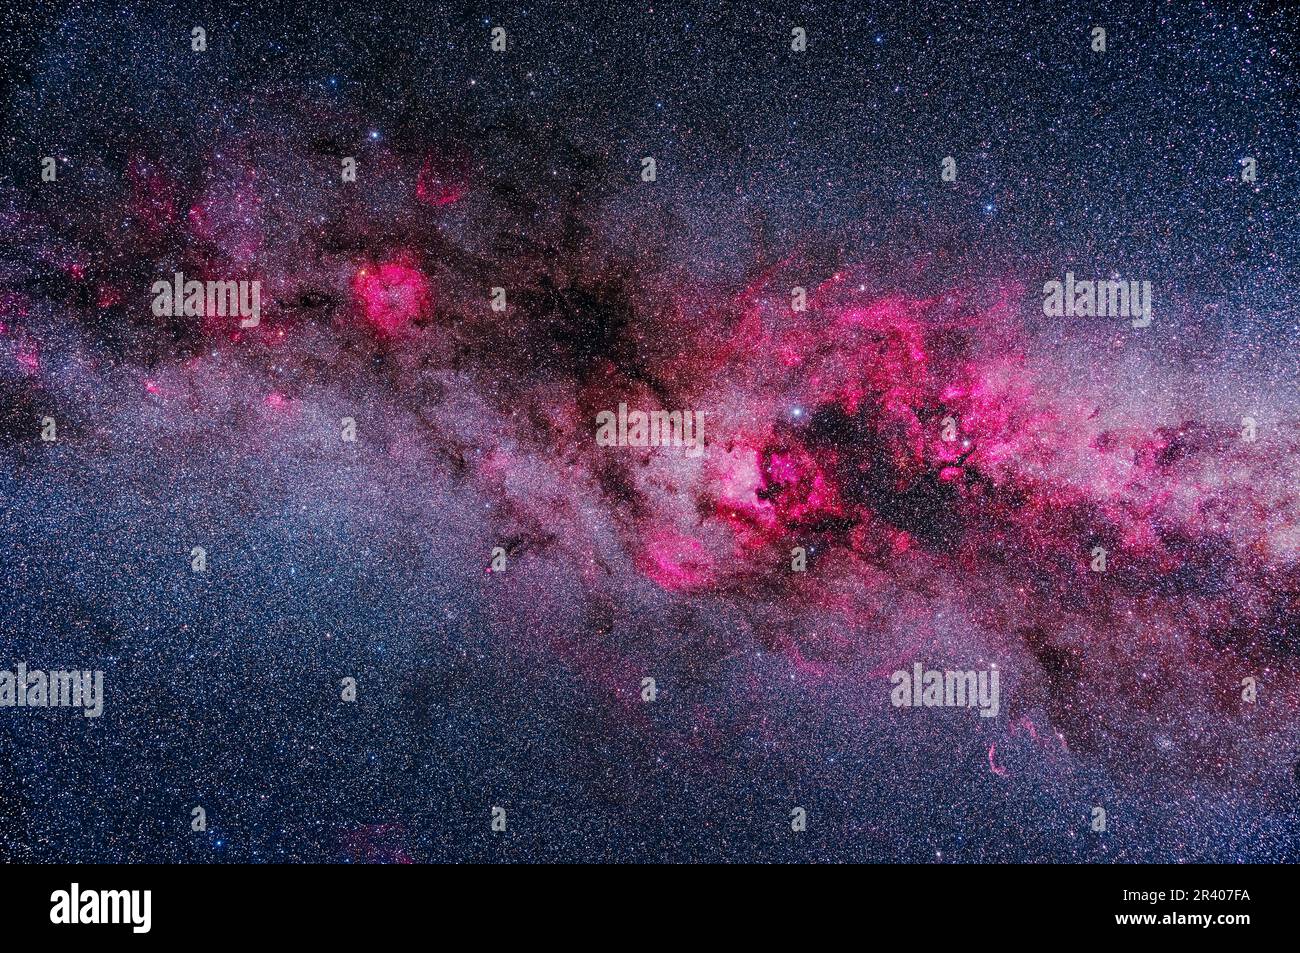 Ein Rahmen der wichtigsten Bereiche heller und dunkler Nebel in Cygnus und Cepheus, der rosafarbene Emissionsnebel im Kontrast zu dunklen staubigen Bereichen zeigt Stockfoto